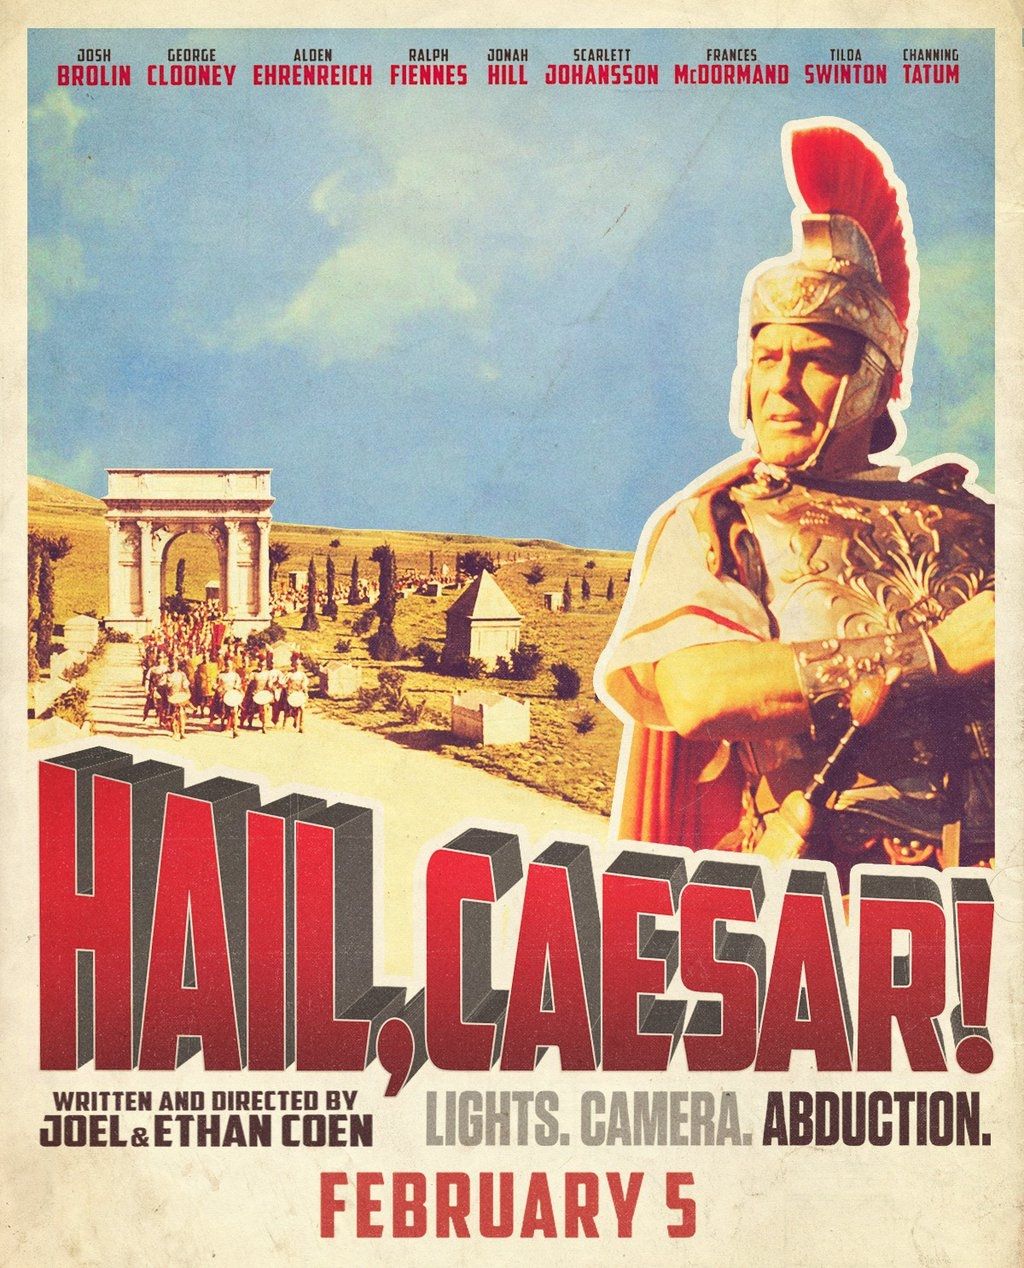 Да здравствует Цезарь!